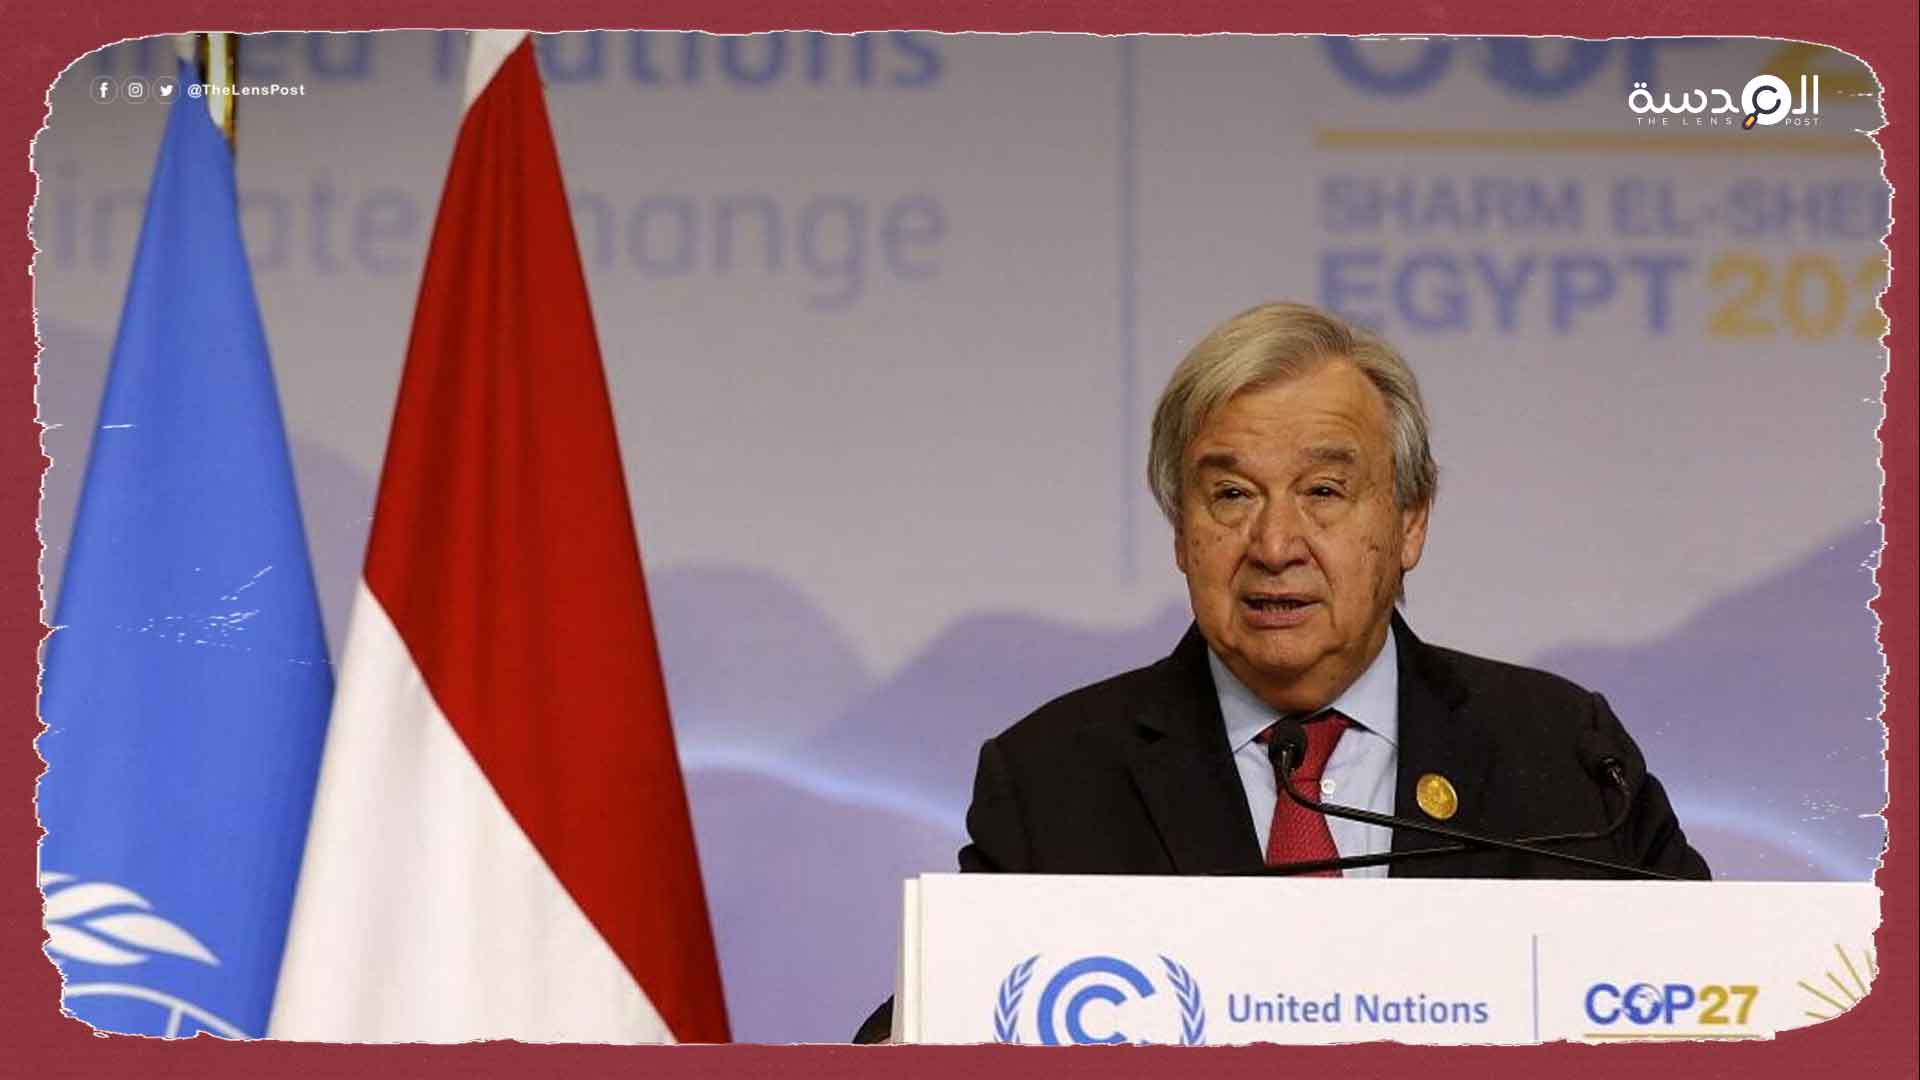 مؤتمر المناخ "كوب 27" بمصر ينتهي بـ "خلافات حادة"